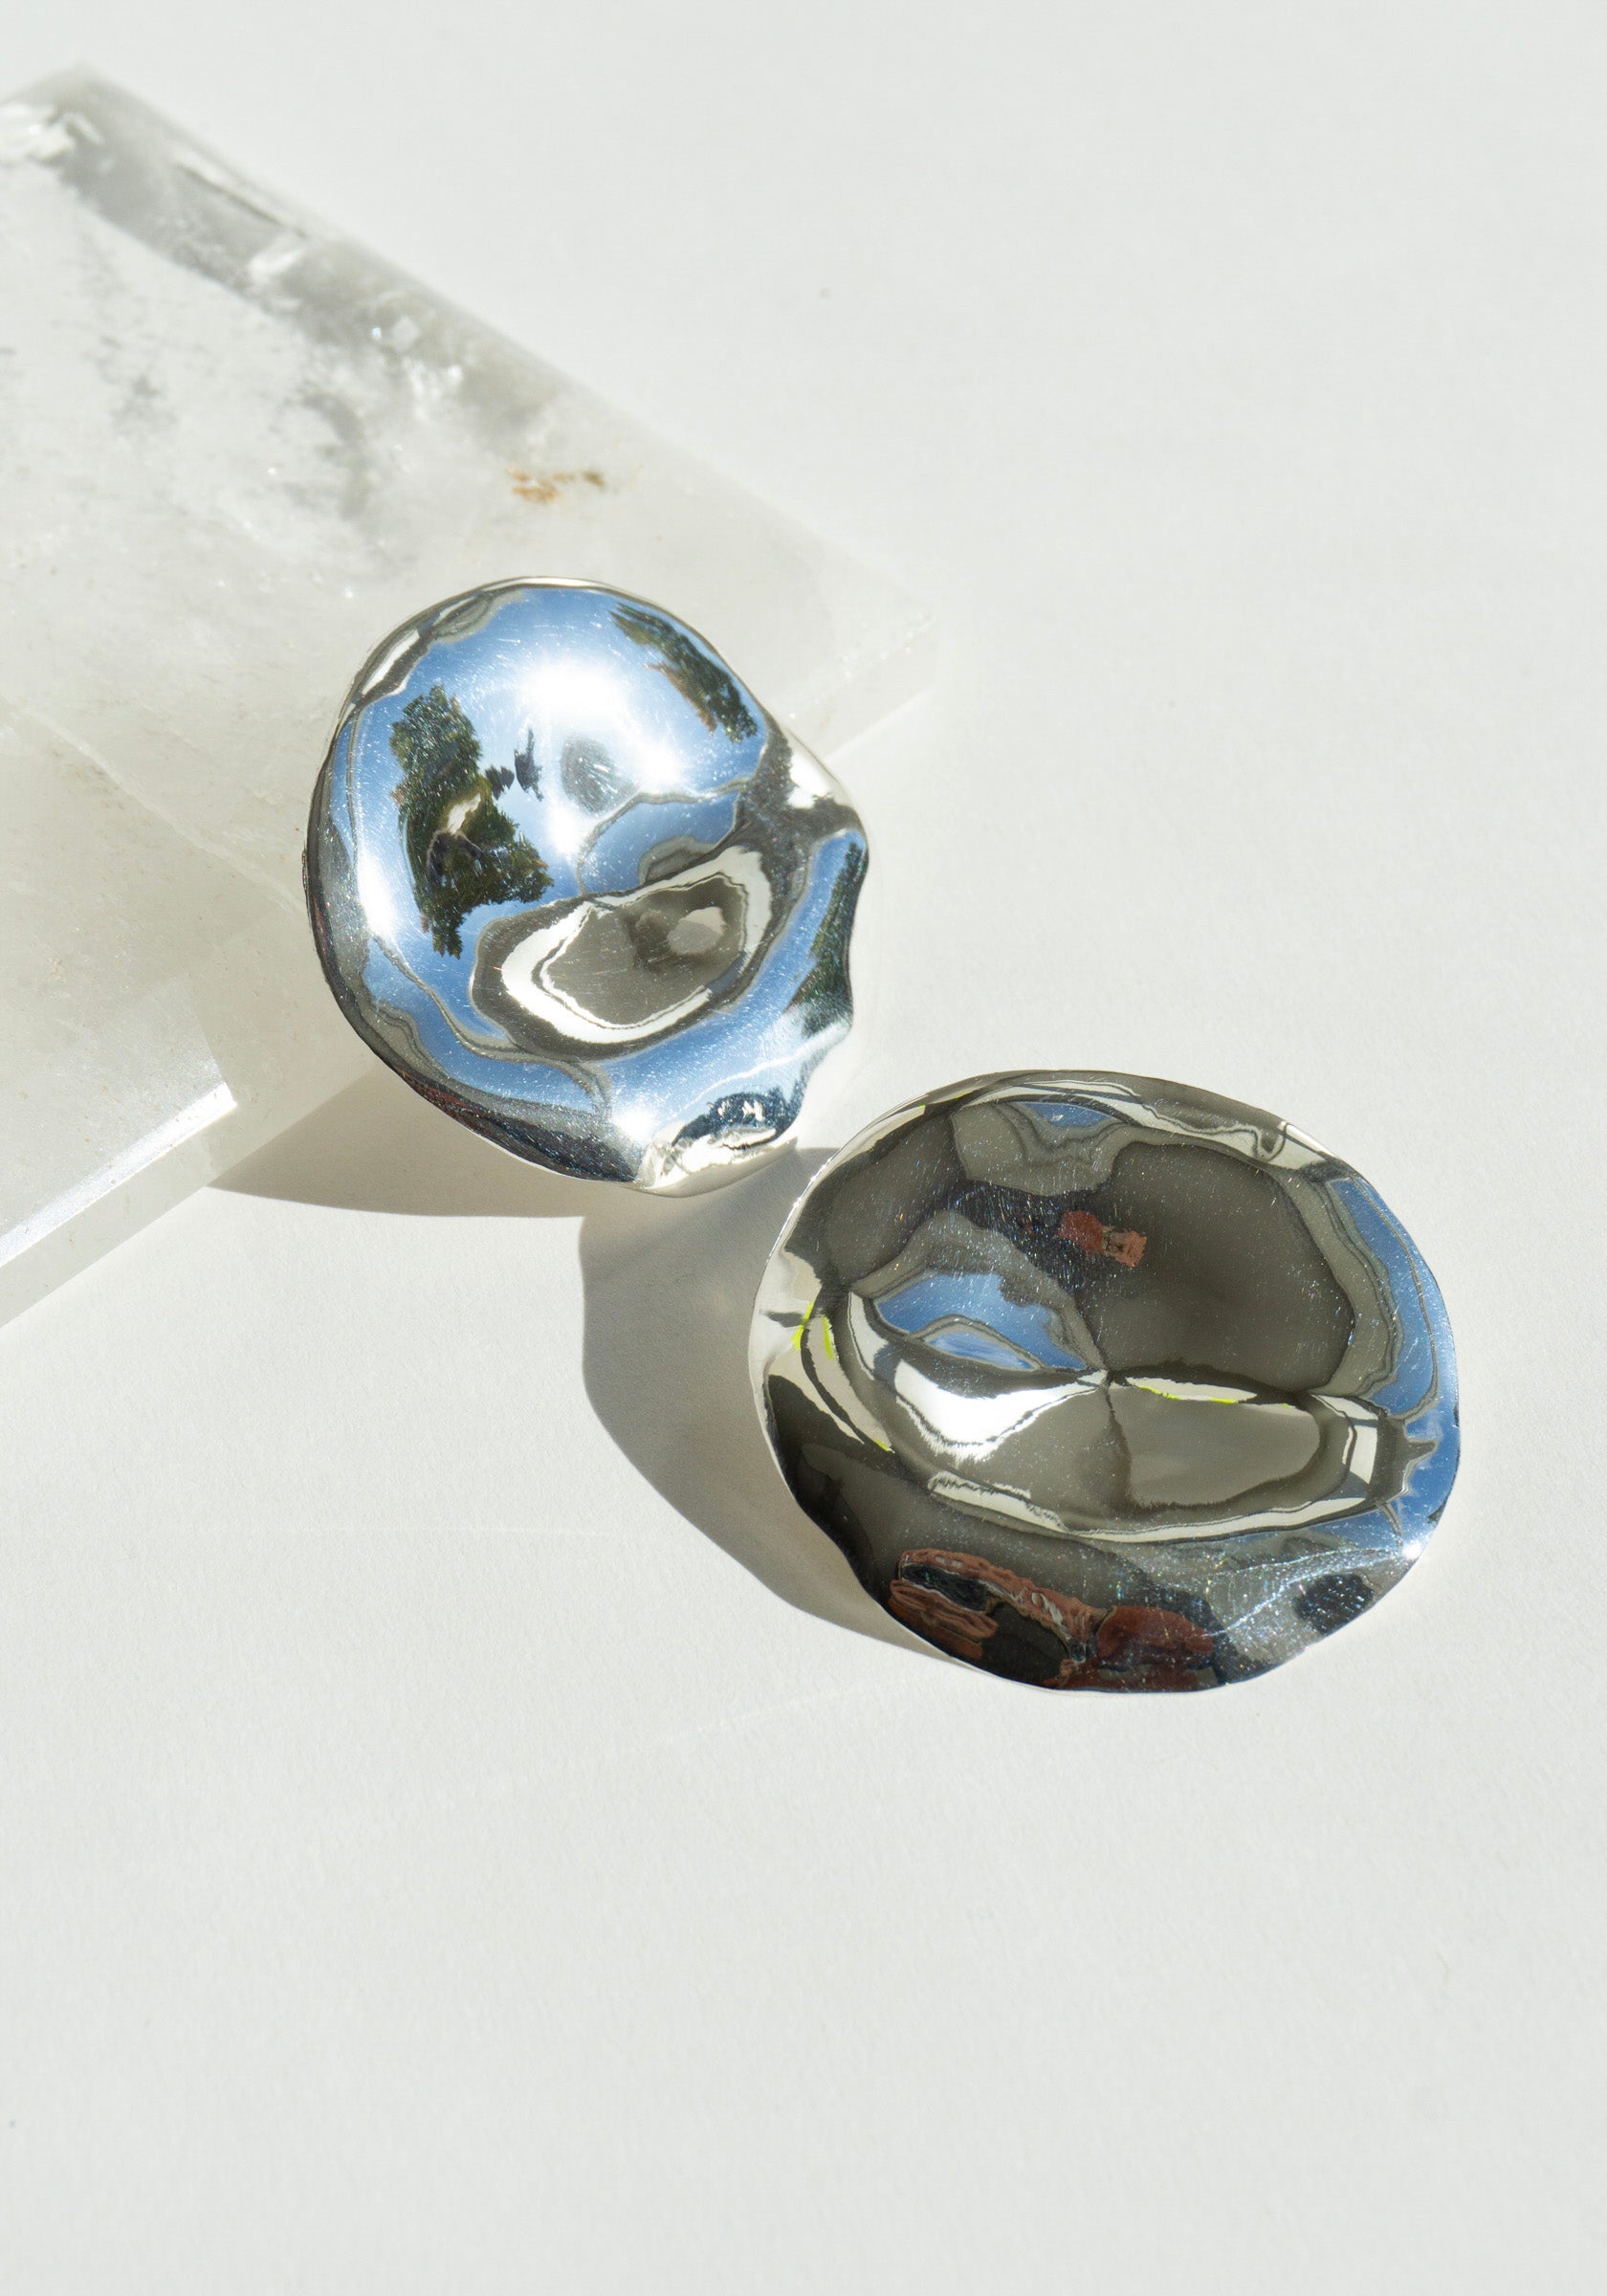 Shannon Bond Moon Earrings in Sterling Silver